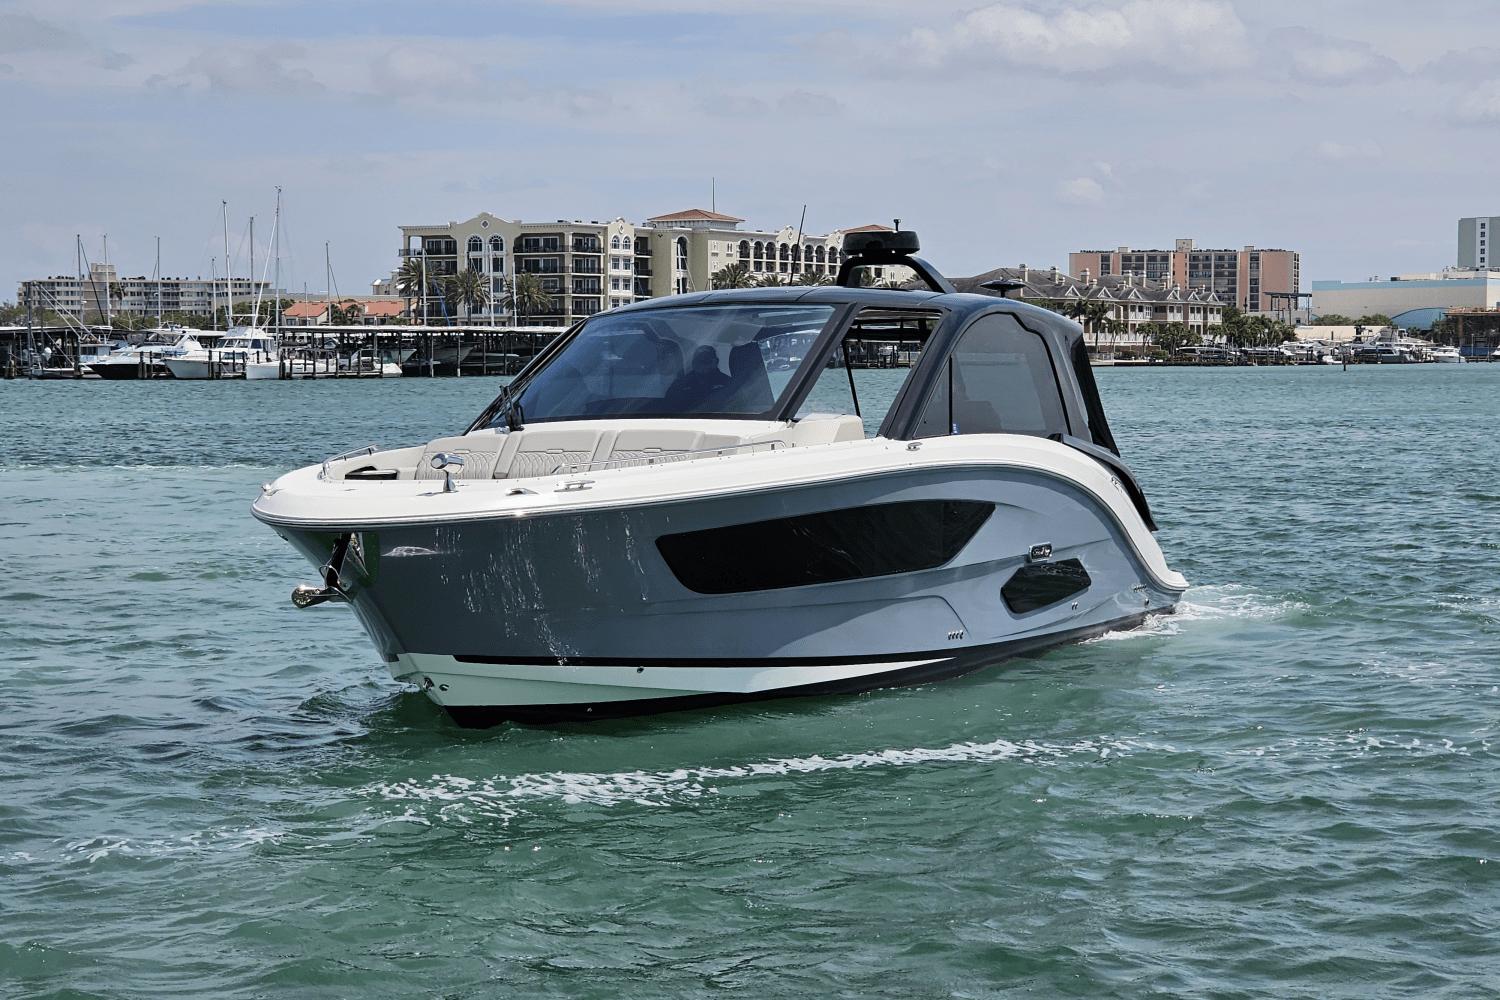 2022 Sea Ray 370 Sundancer Sports Cruiser for sale - YachtWorld